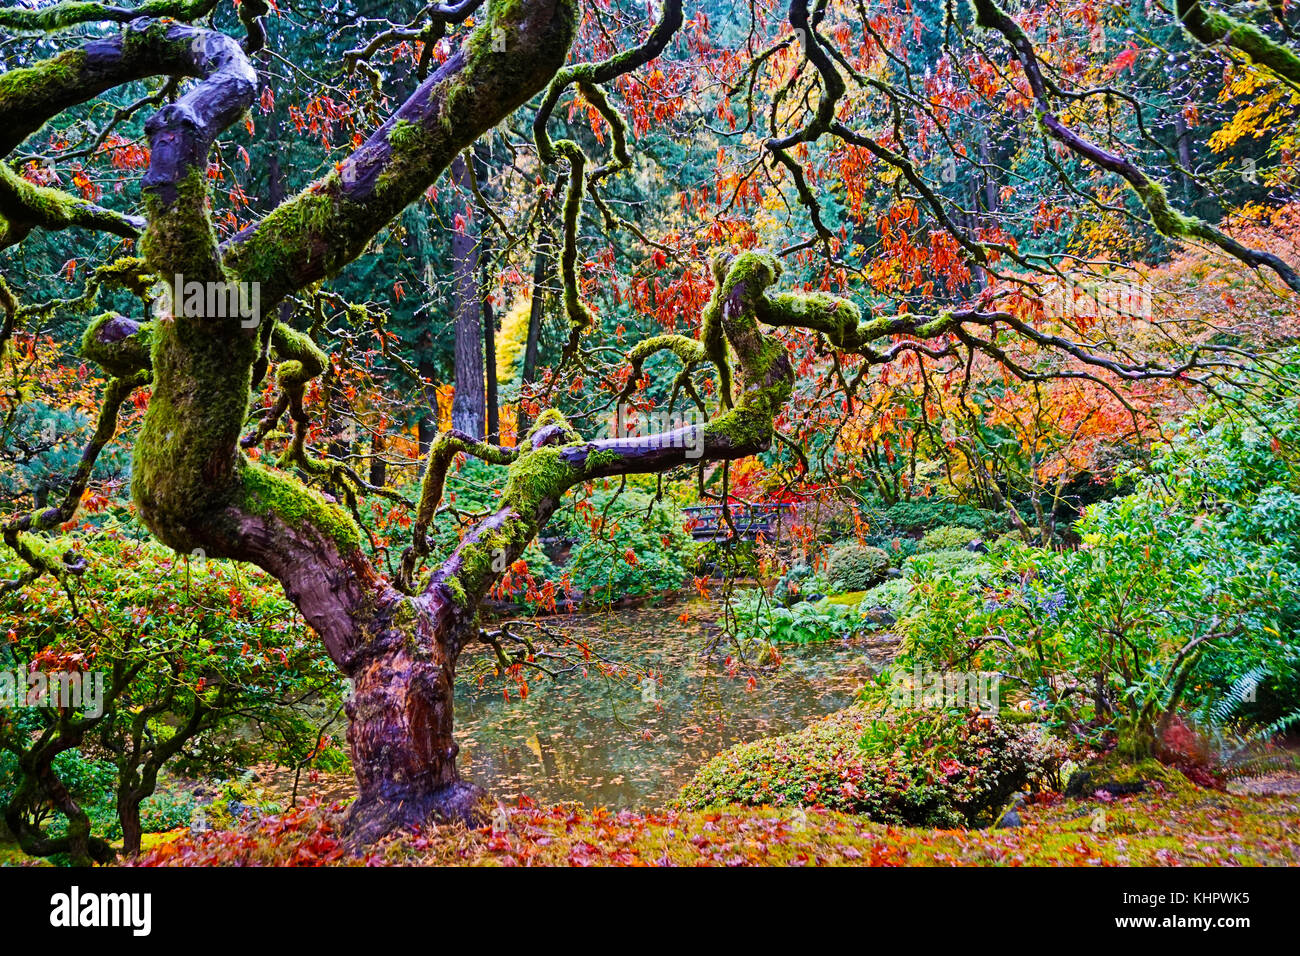 Portland Japanese Garden crooked tree in autumn Stock Photo